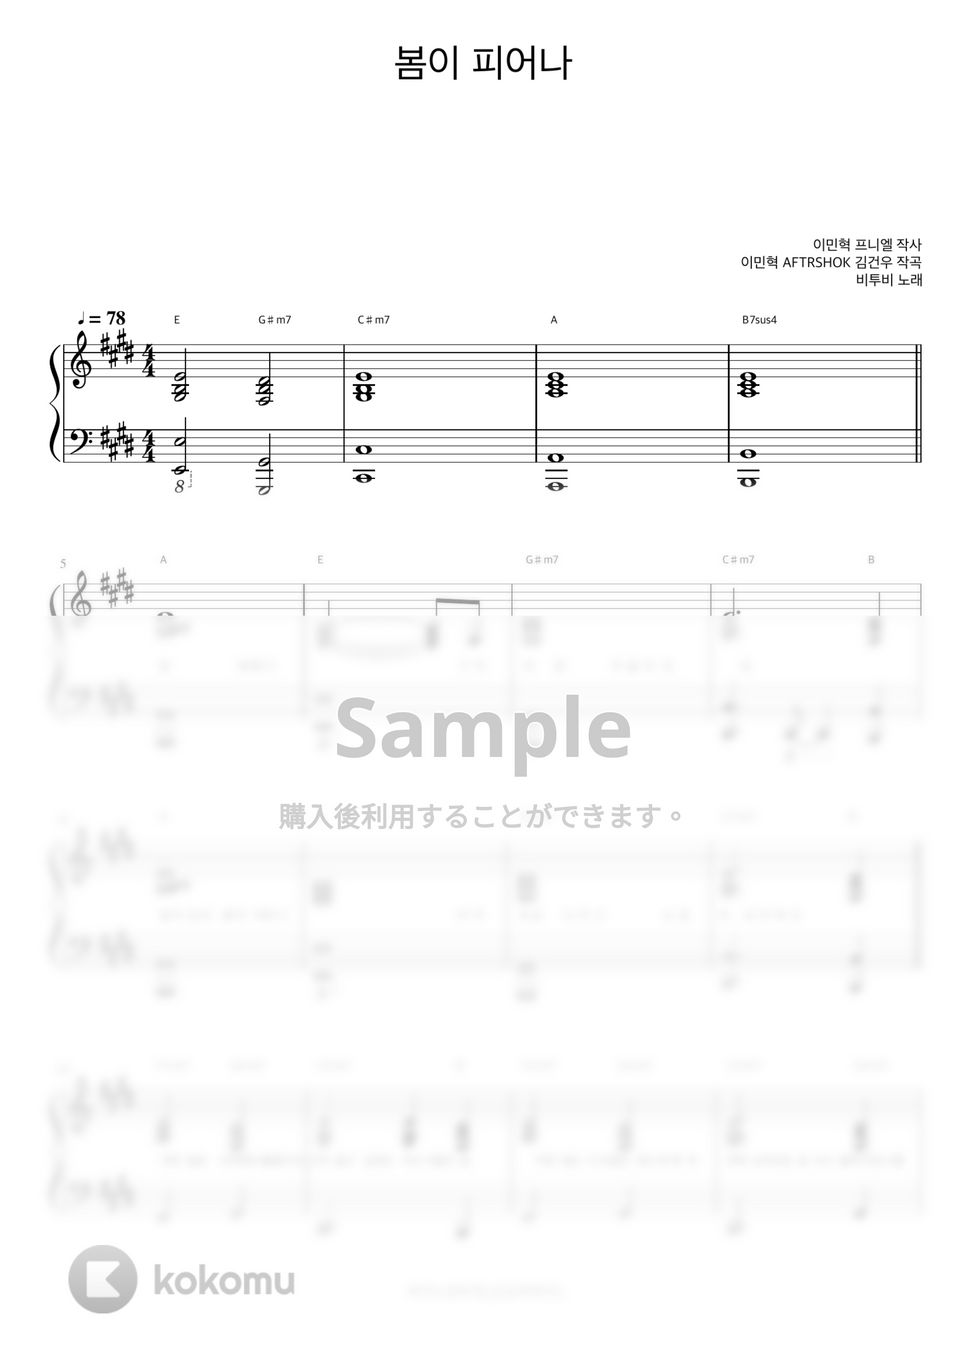 BTOB - Blooming Day (伴奏楽譜) by 피아노정류장